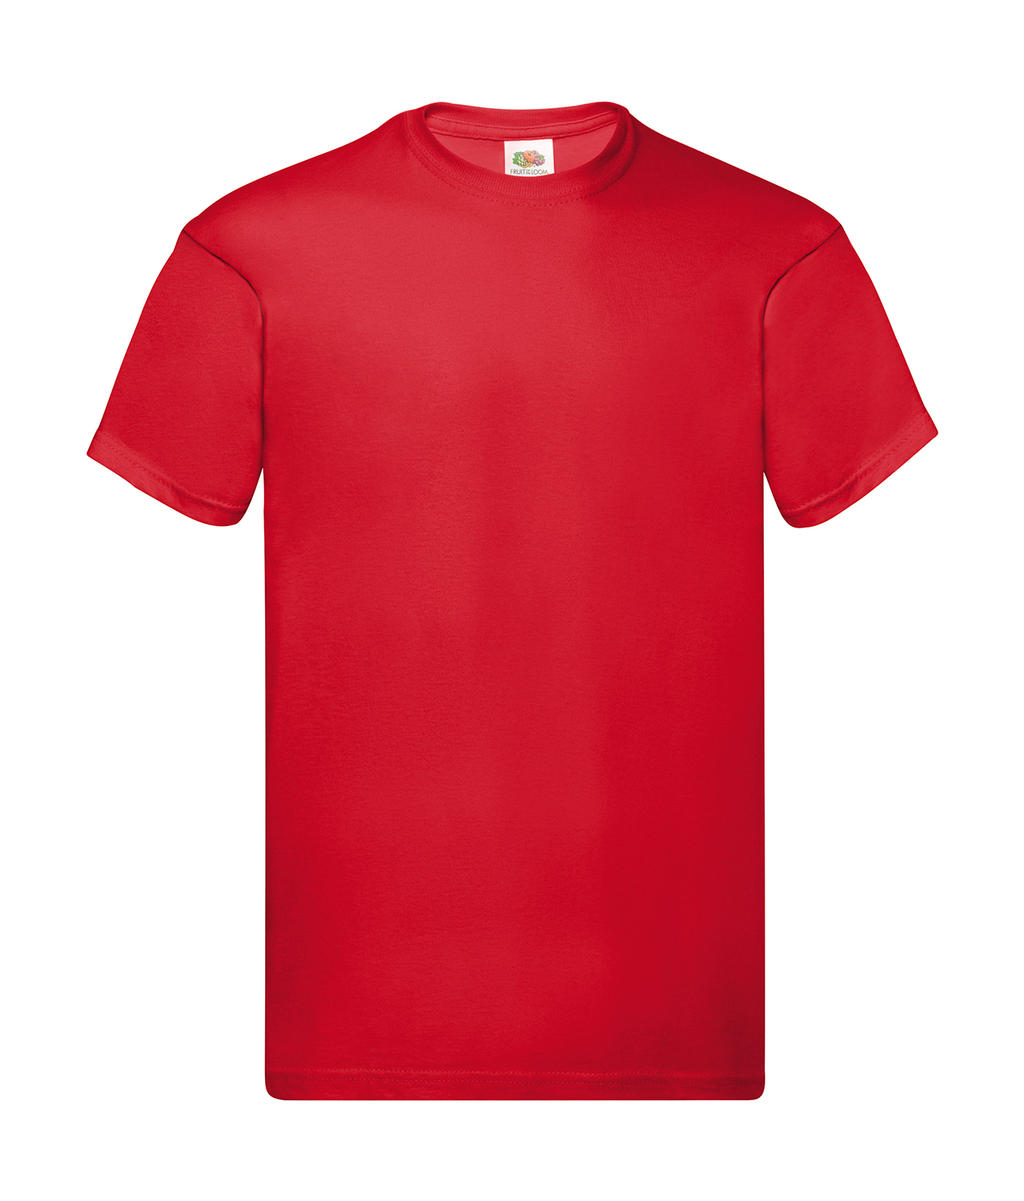 Tričko Original T - red